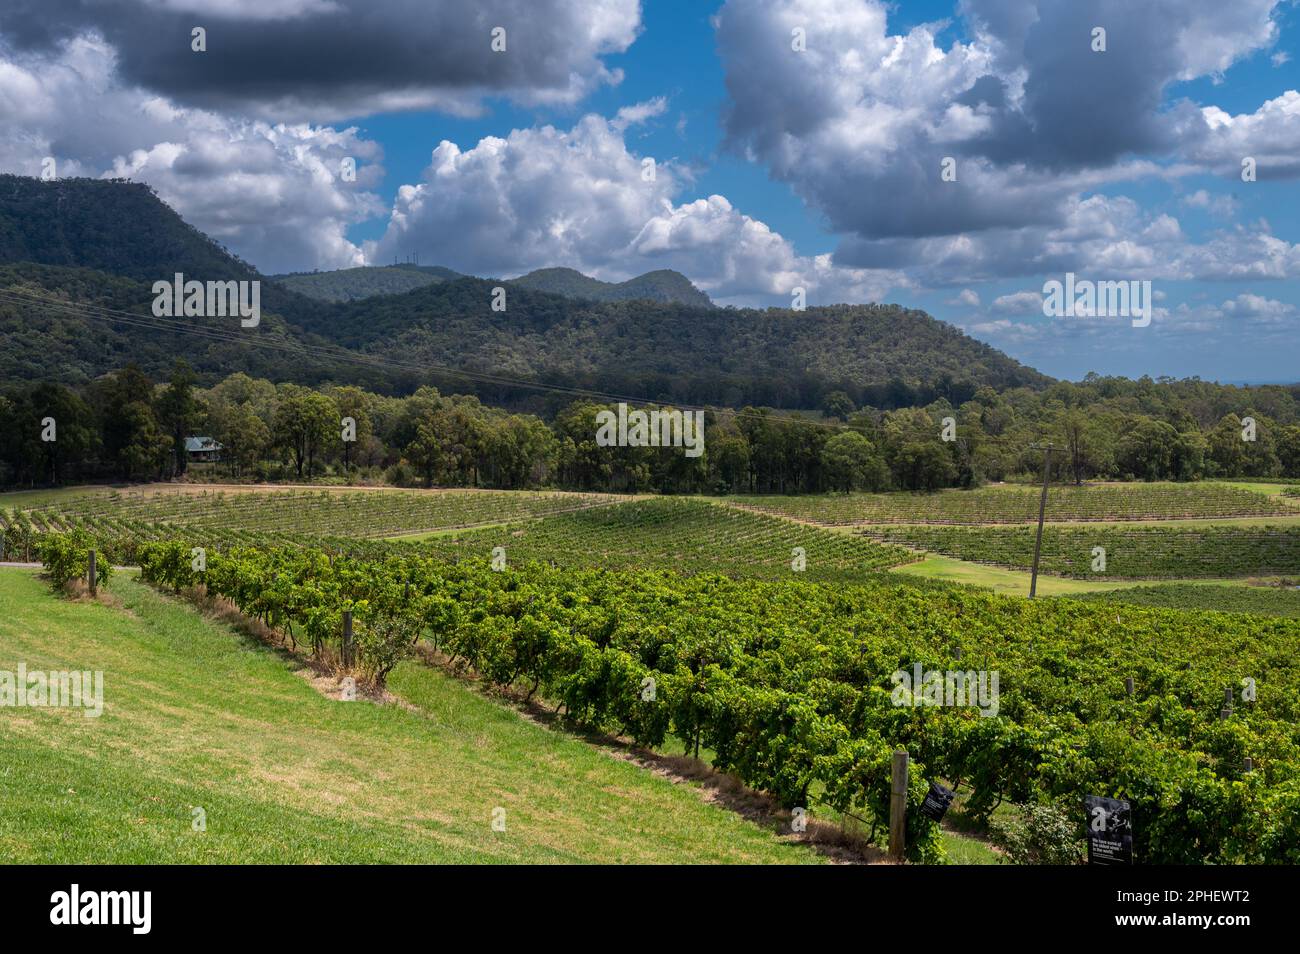 Nach der Traubenernte in der Weinregion Hunter Valley in New South Wales, NSW, Australien, werden die Reben mit einem Traktor besprüht. Stockfoto